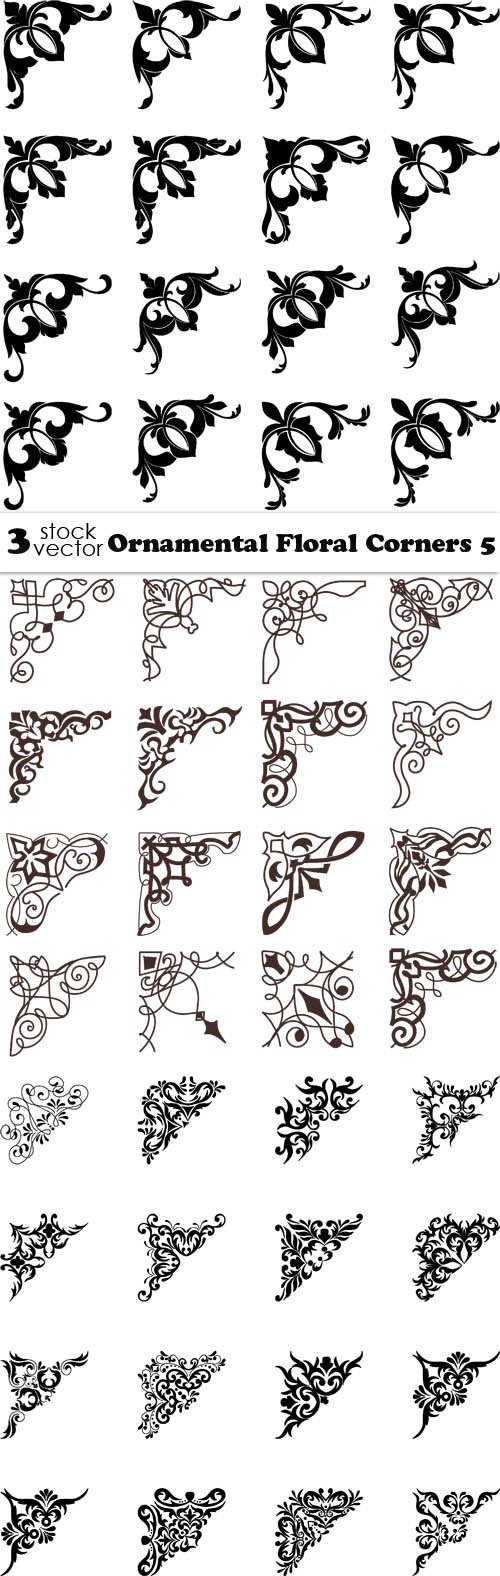 Vectors - Ornamental Floral Corners 5